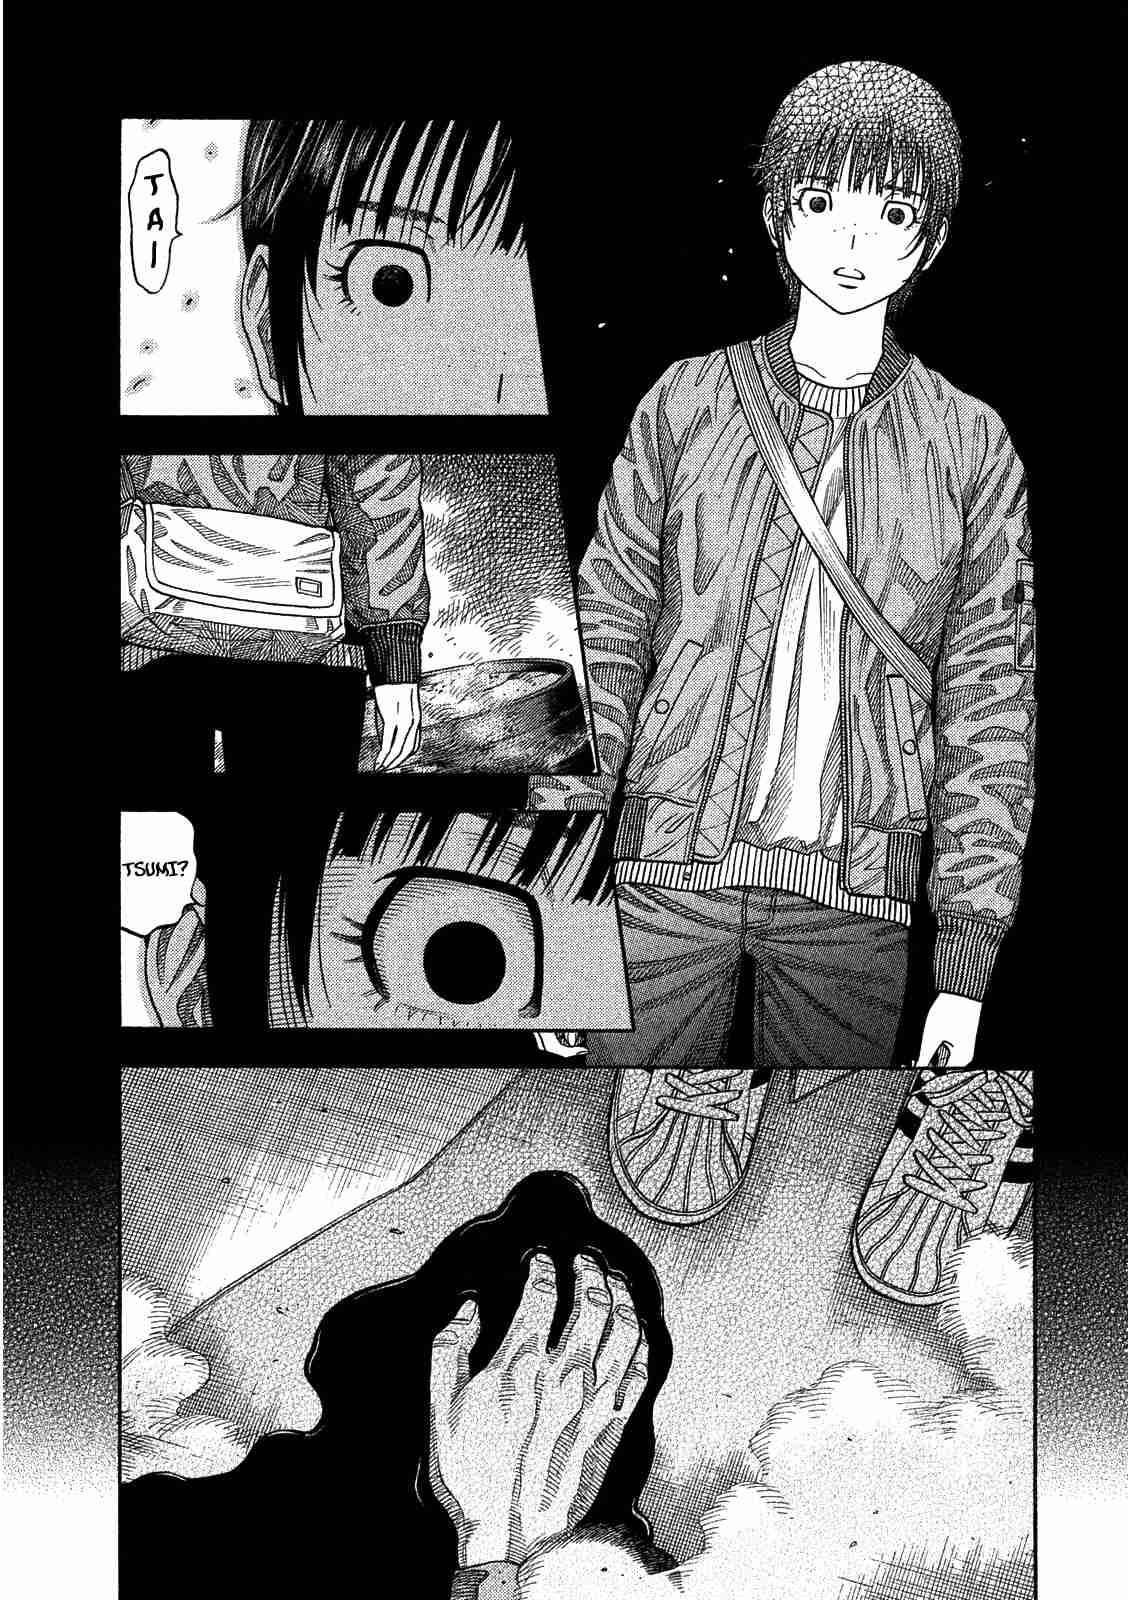 Kudan no Gotoshi Vol. 1 Ch. 3 Shiraishi Tatsumi < Part 2 >